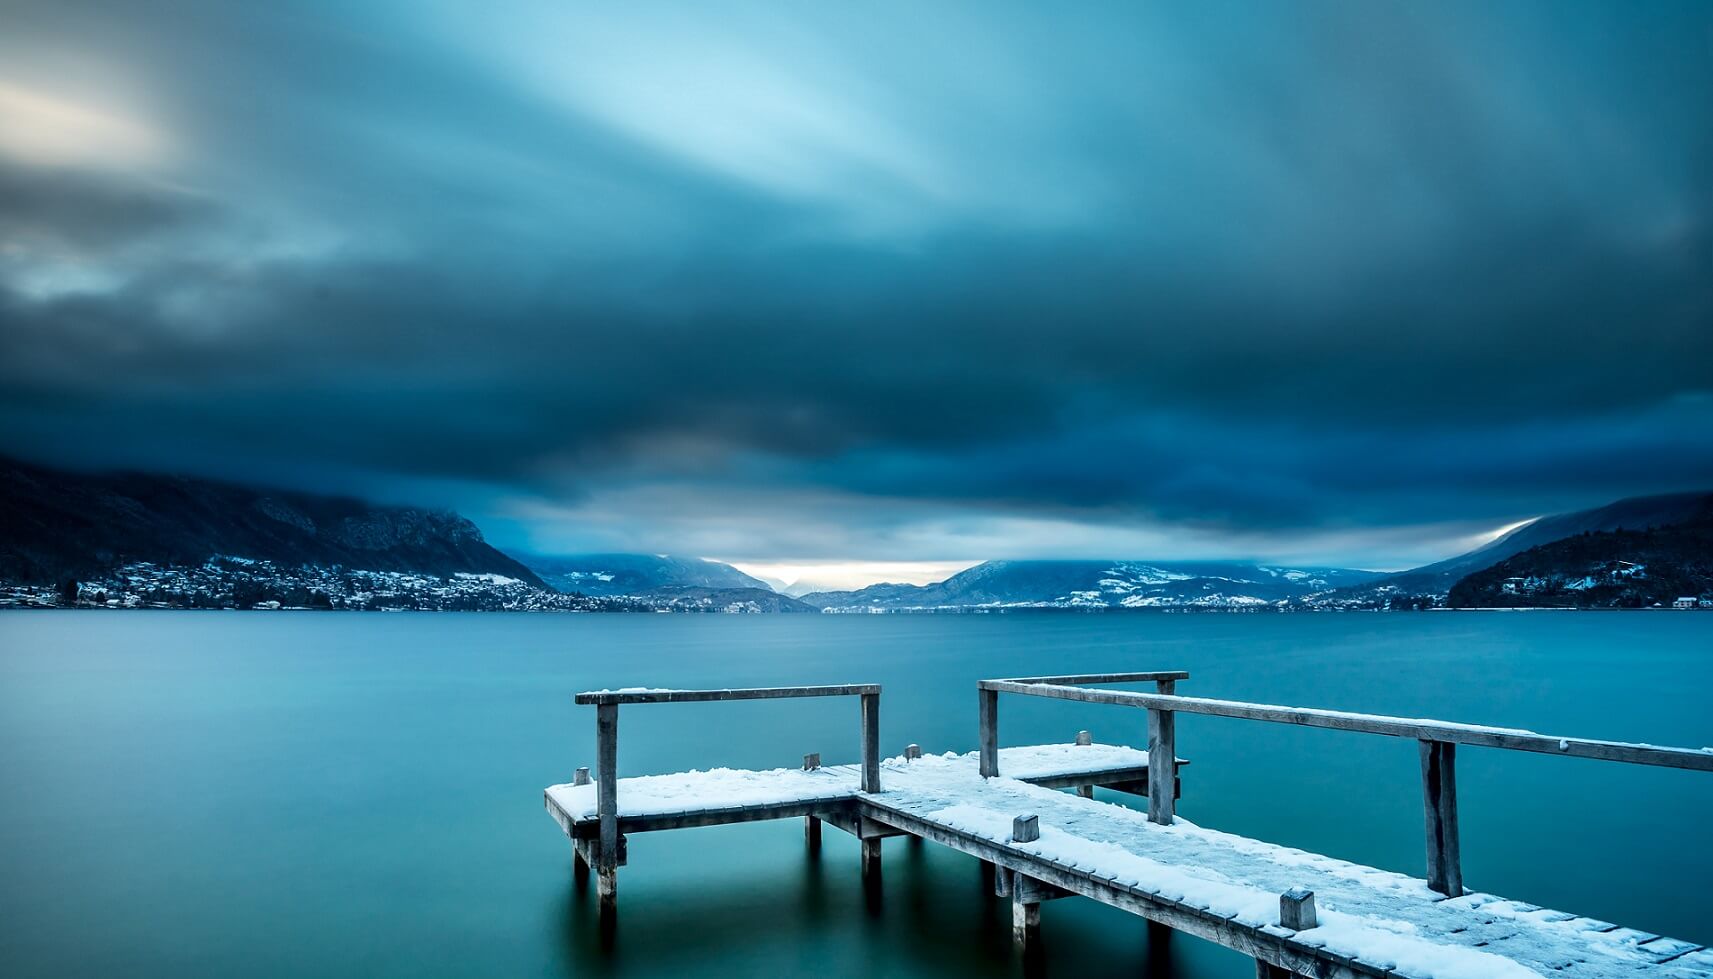 Vue du lac d'Annecy, hiver, ponton couvert de neige et nuages bas sur les montagnes